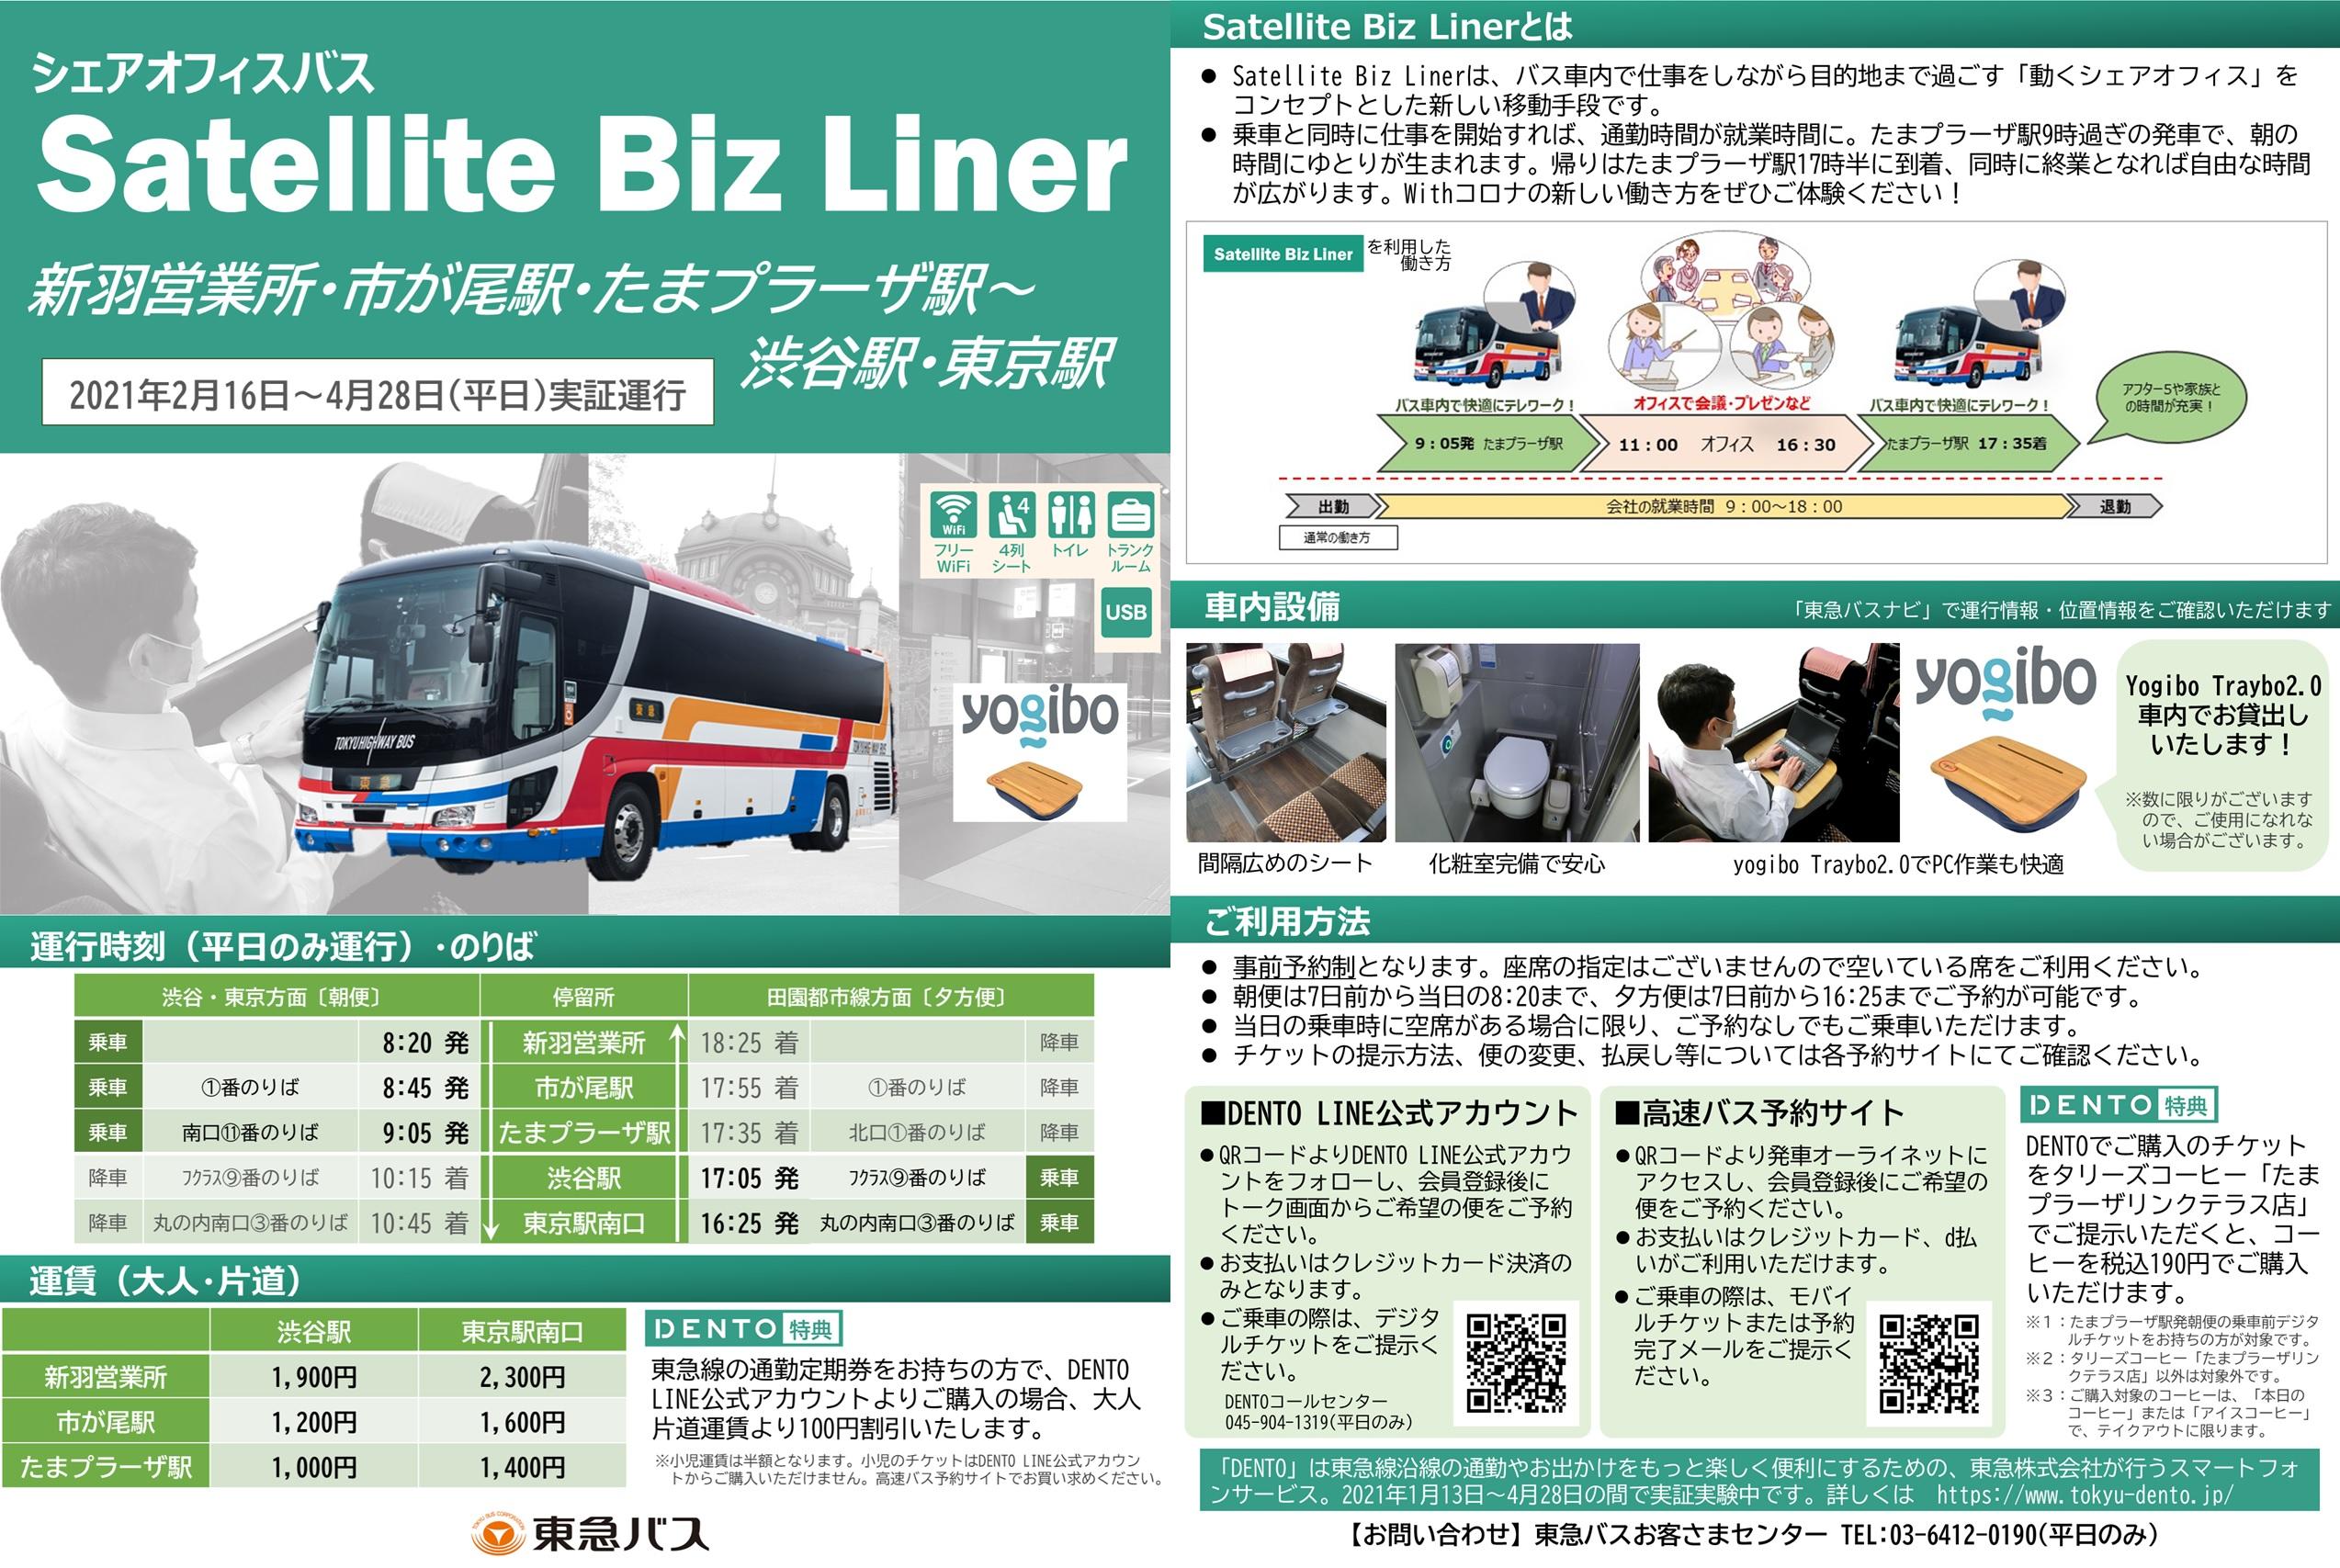 運行終了 バス車内で快適テレワーク シェアオフィスバス Satellite Biz Liner を実証運行します お知らせ 東急バス